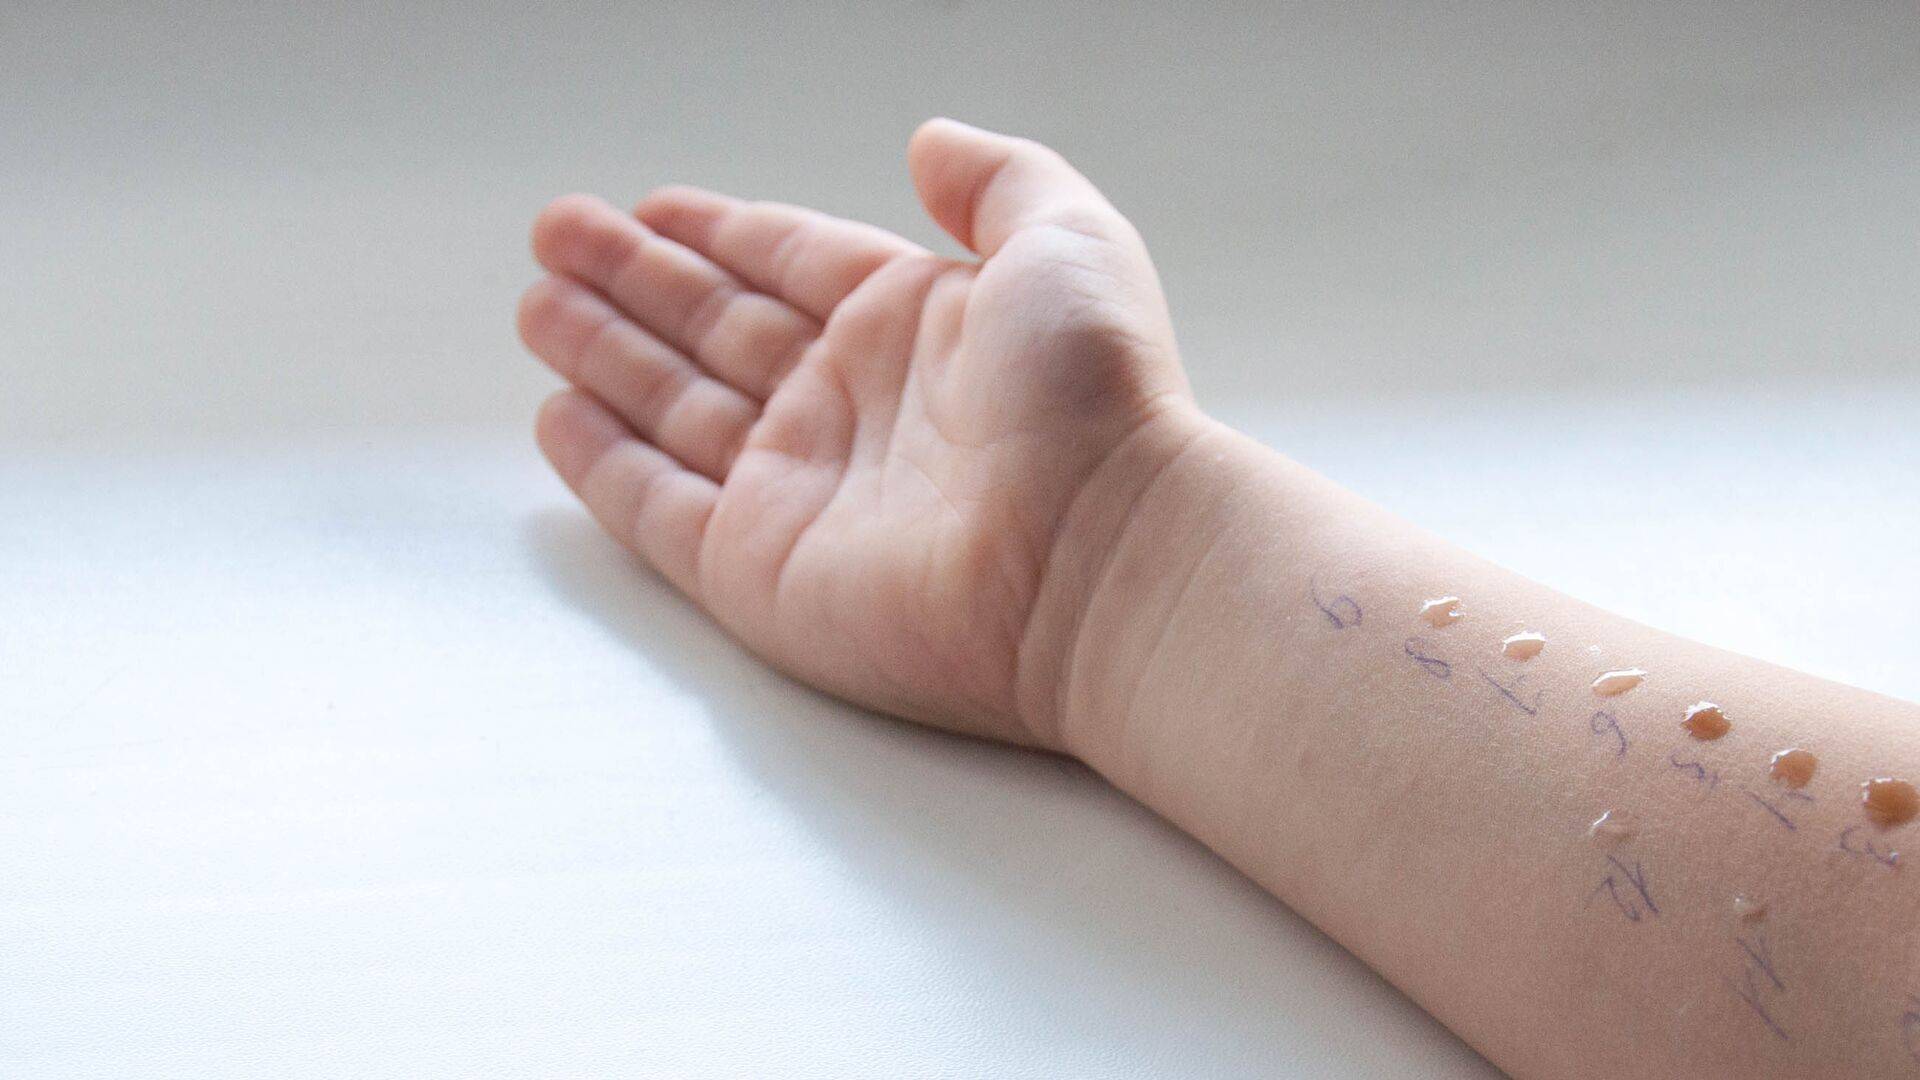 Kinderarm tijdens een huidpriktest – de vochtdruppeltjes met daarin de allergenen kunnen een reactie geven die lijkt op een muggenbeet.